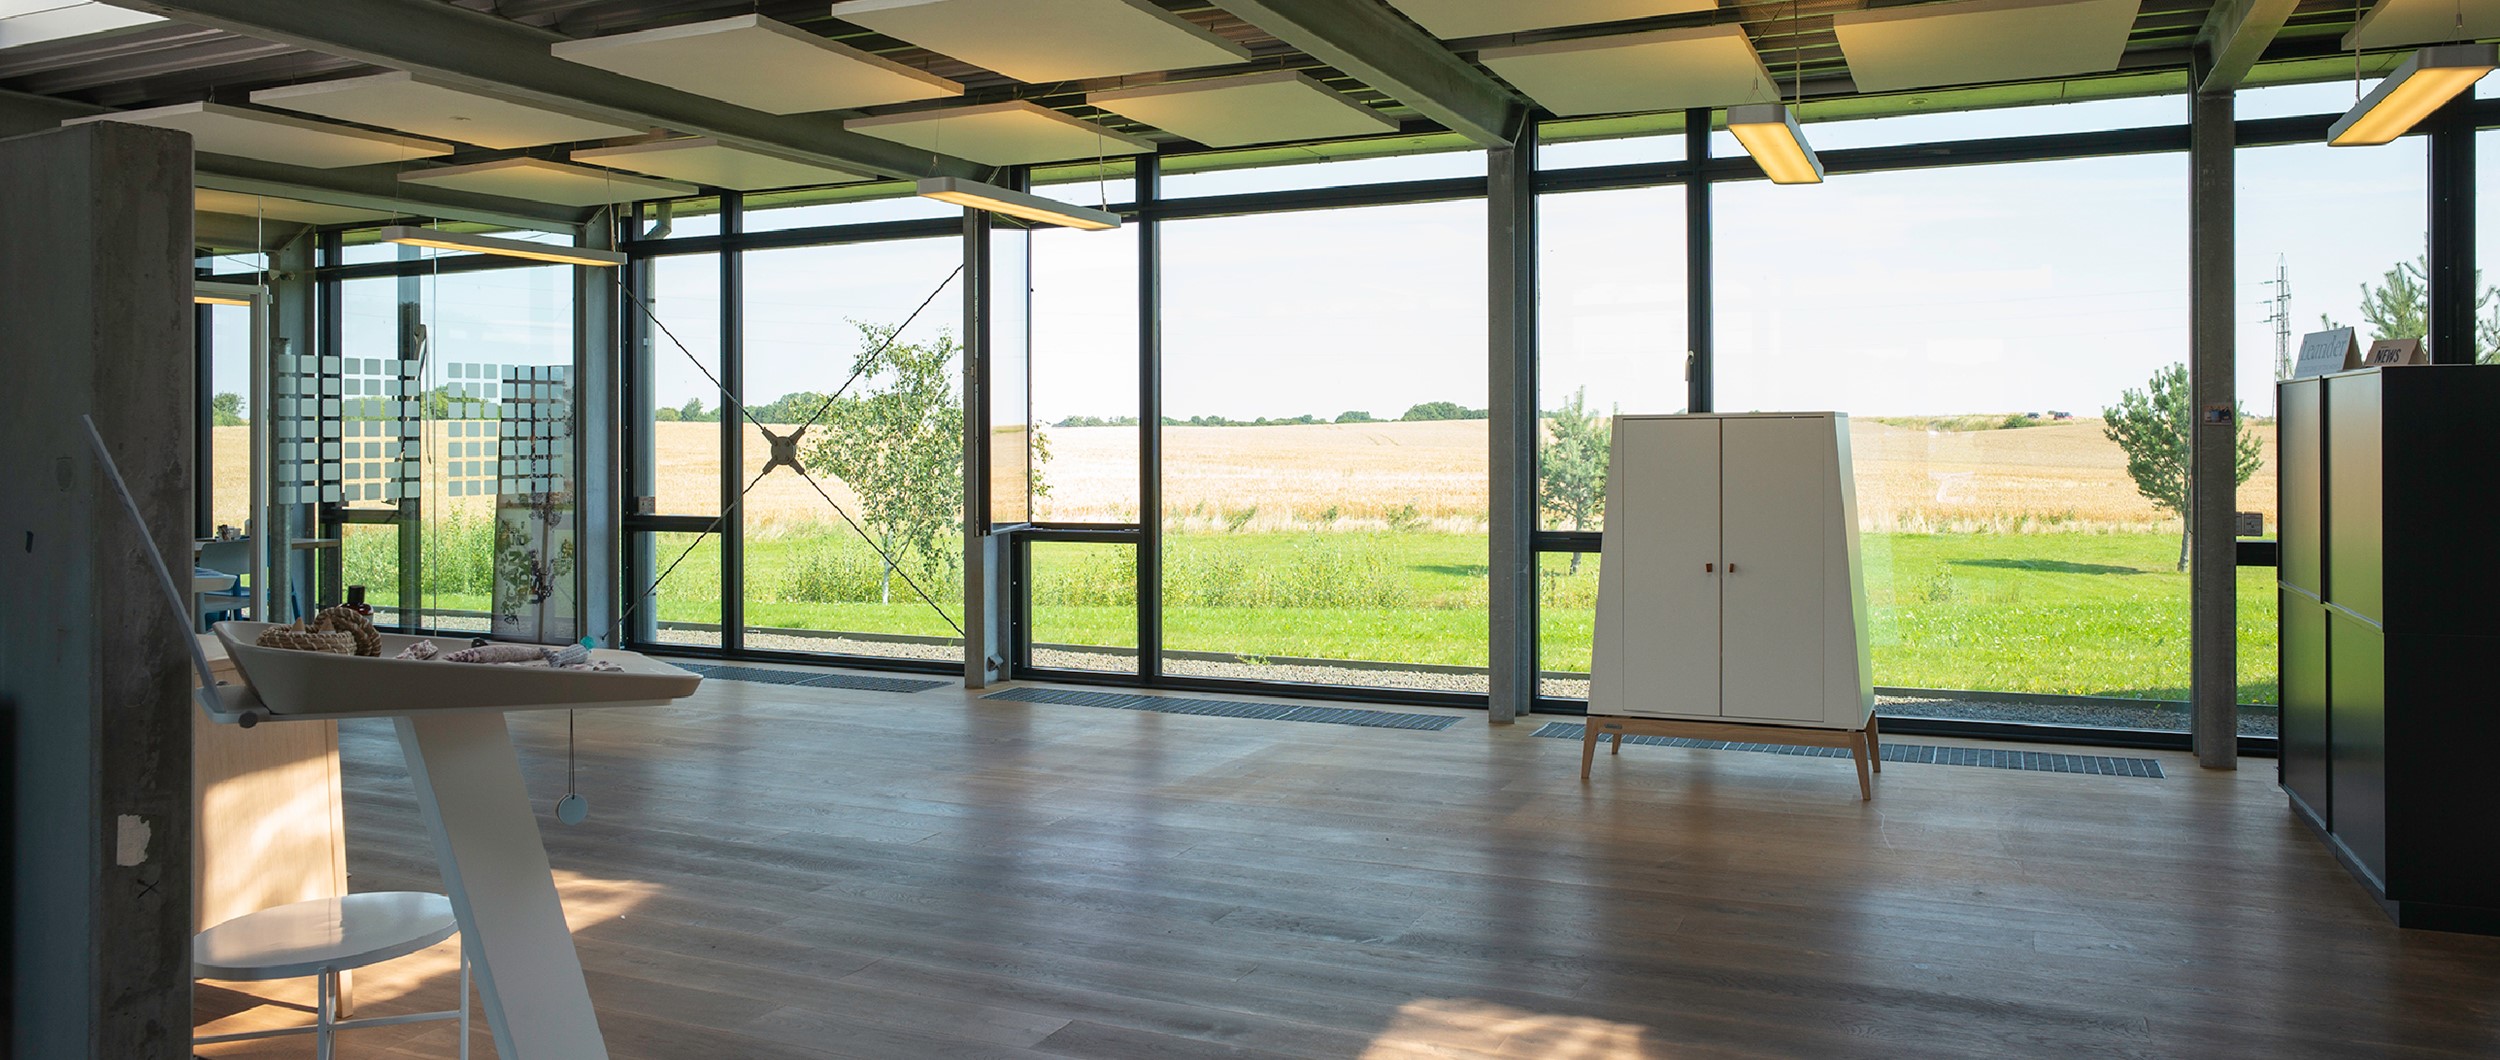 Kontorbygningen indeholder i princippet et stort rum. Bygningens boomerang-form og store rummøbler deler kontorrummet op.